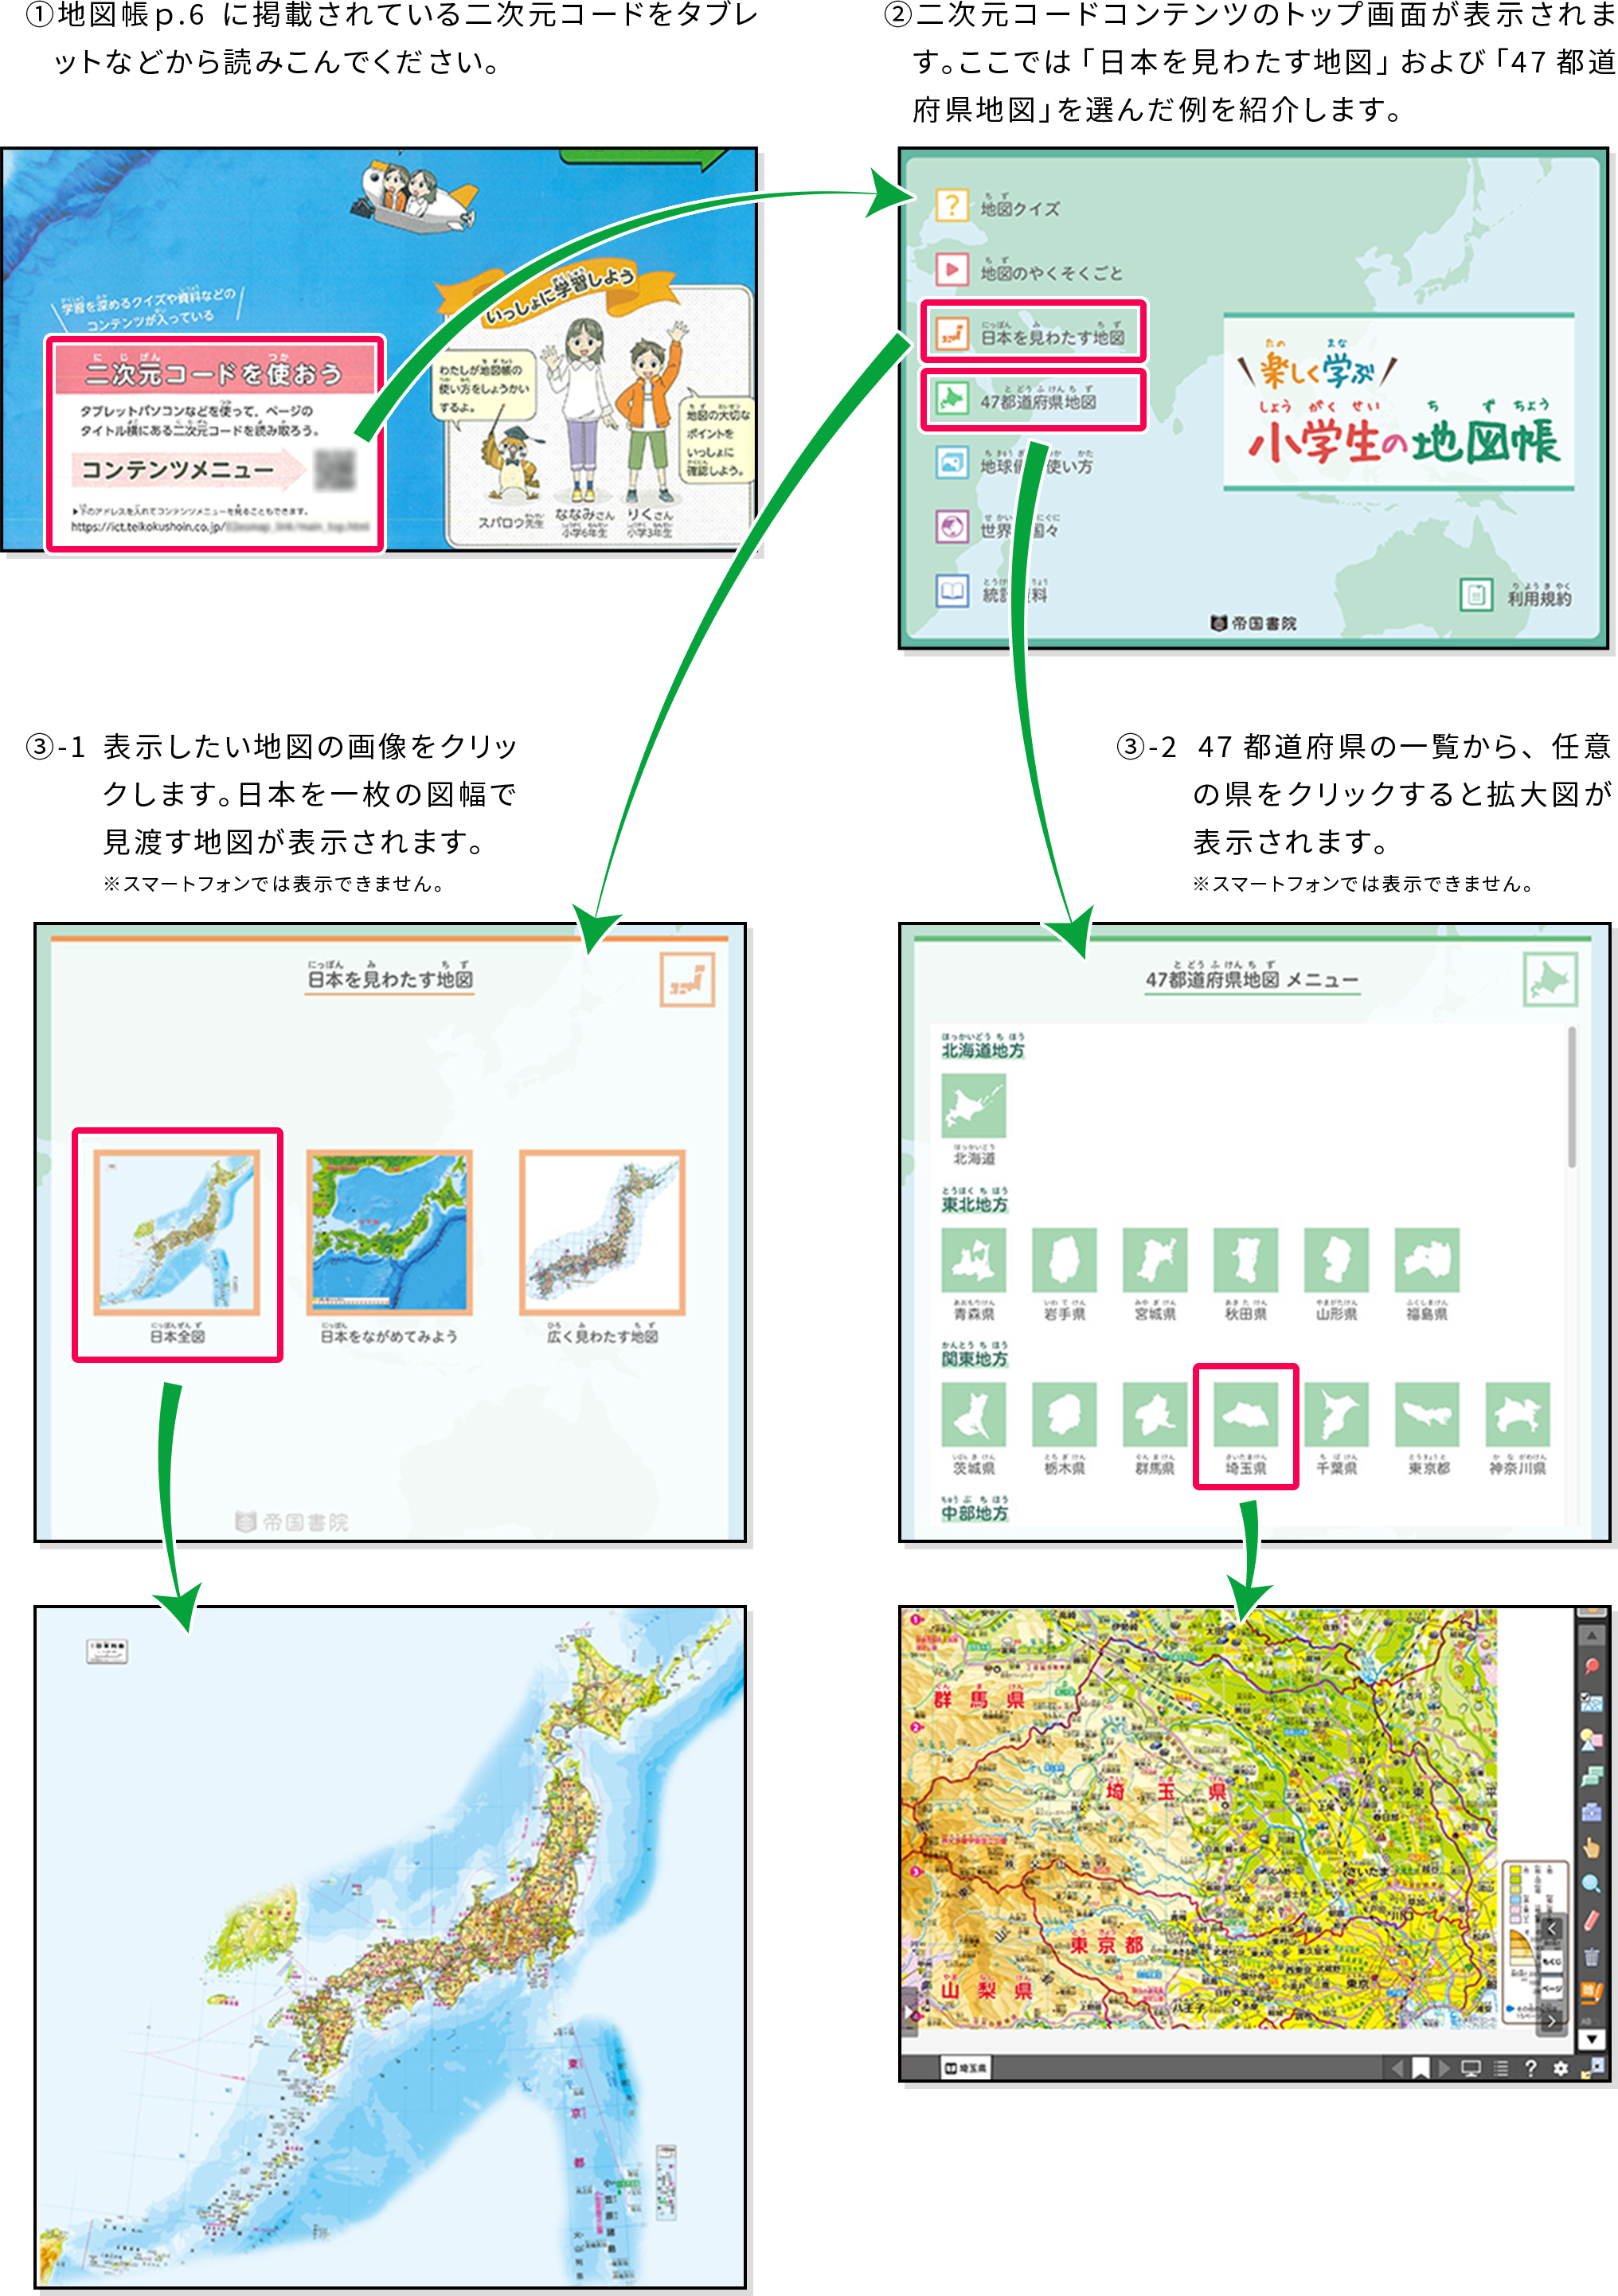 ①地図帳p.6に掲載されている二次元コードをタブレットなどから読みこんでください。②二次元コードコンテンツのトップ画面が表示されます。ここでは「日本を見渡す地図」および「47都道府県地図」を選んだ例を紹介します。